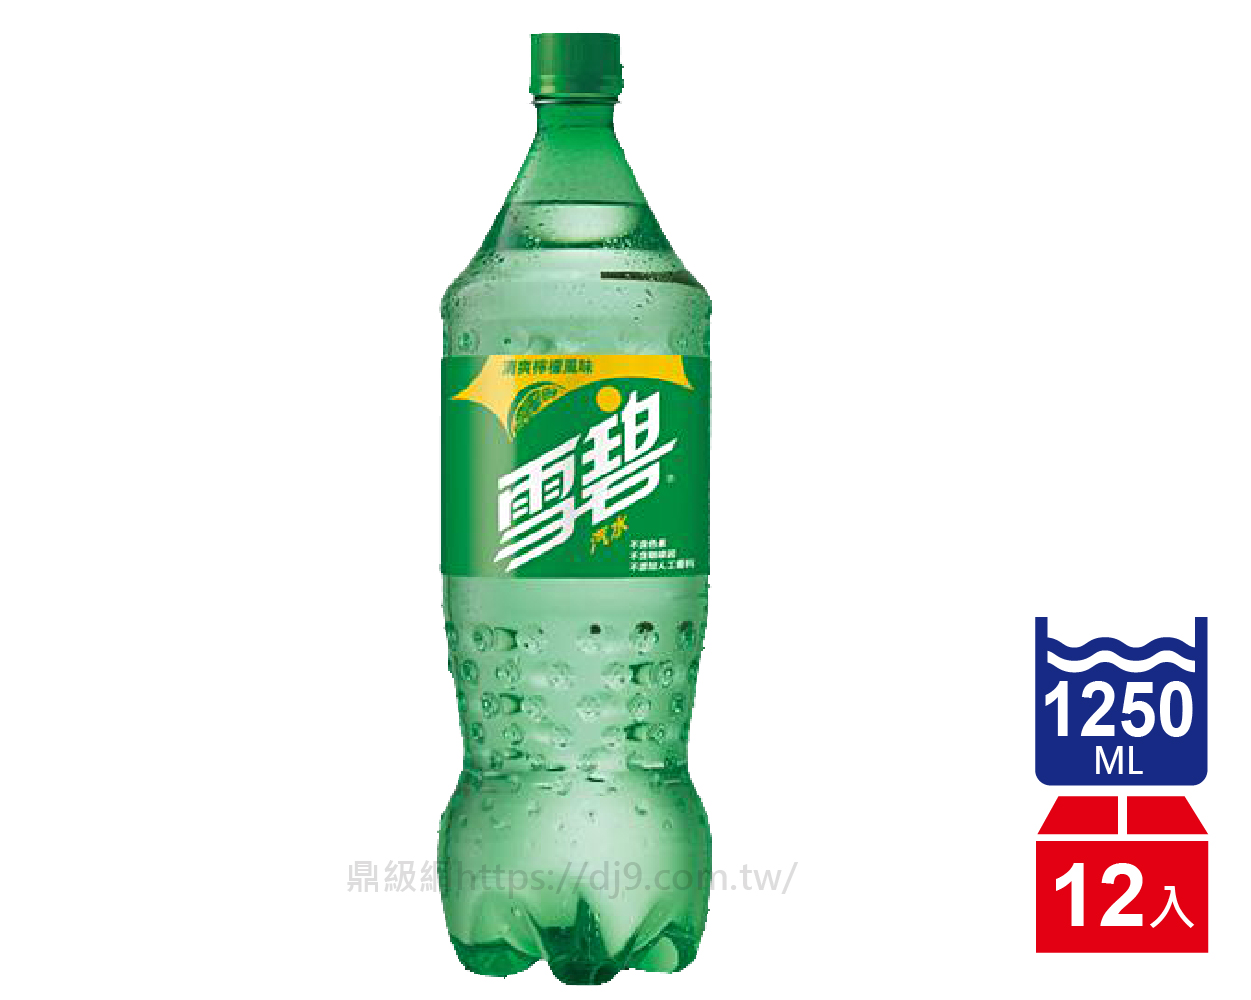 雪碧汽水(1250mlx12瓶)